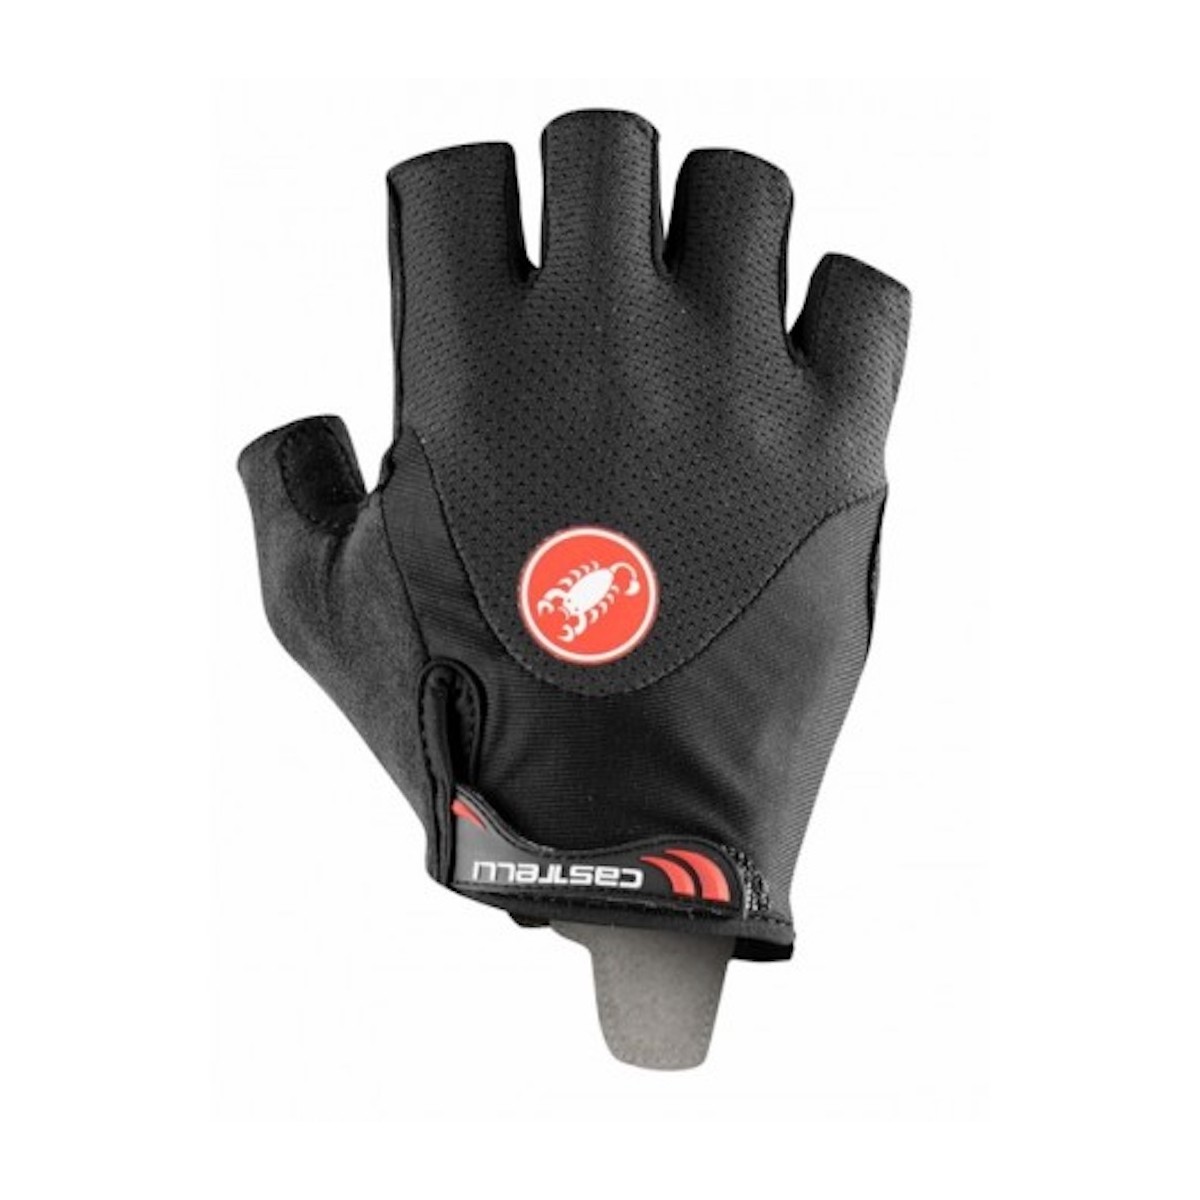 CASTELLI ARENBERG GEL 2 GLOVE short glove - black